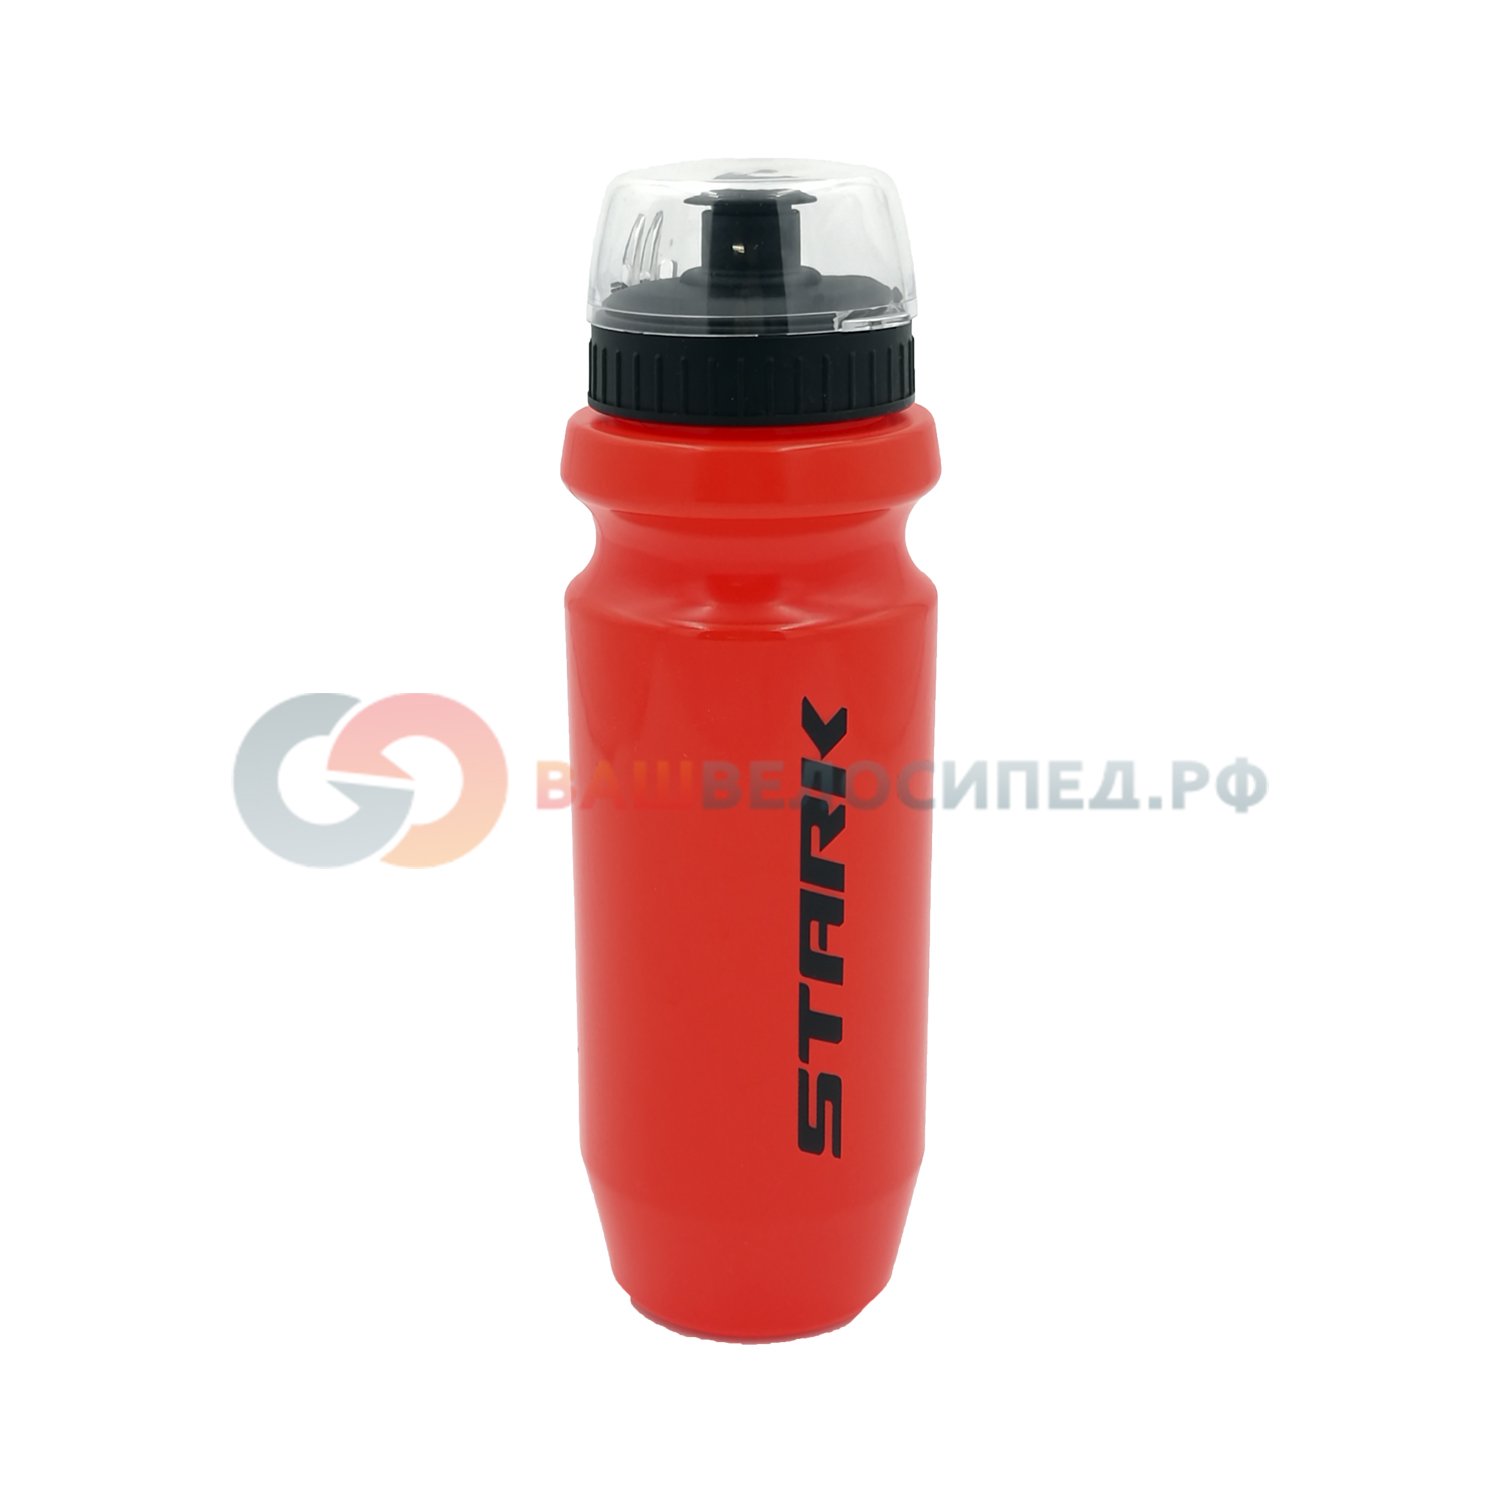 фото Фляга велосипедная tc-bt38, 570мл, пластик, с клапаном и защитным колпачком, красная, с лого stark